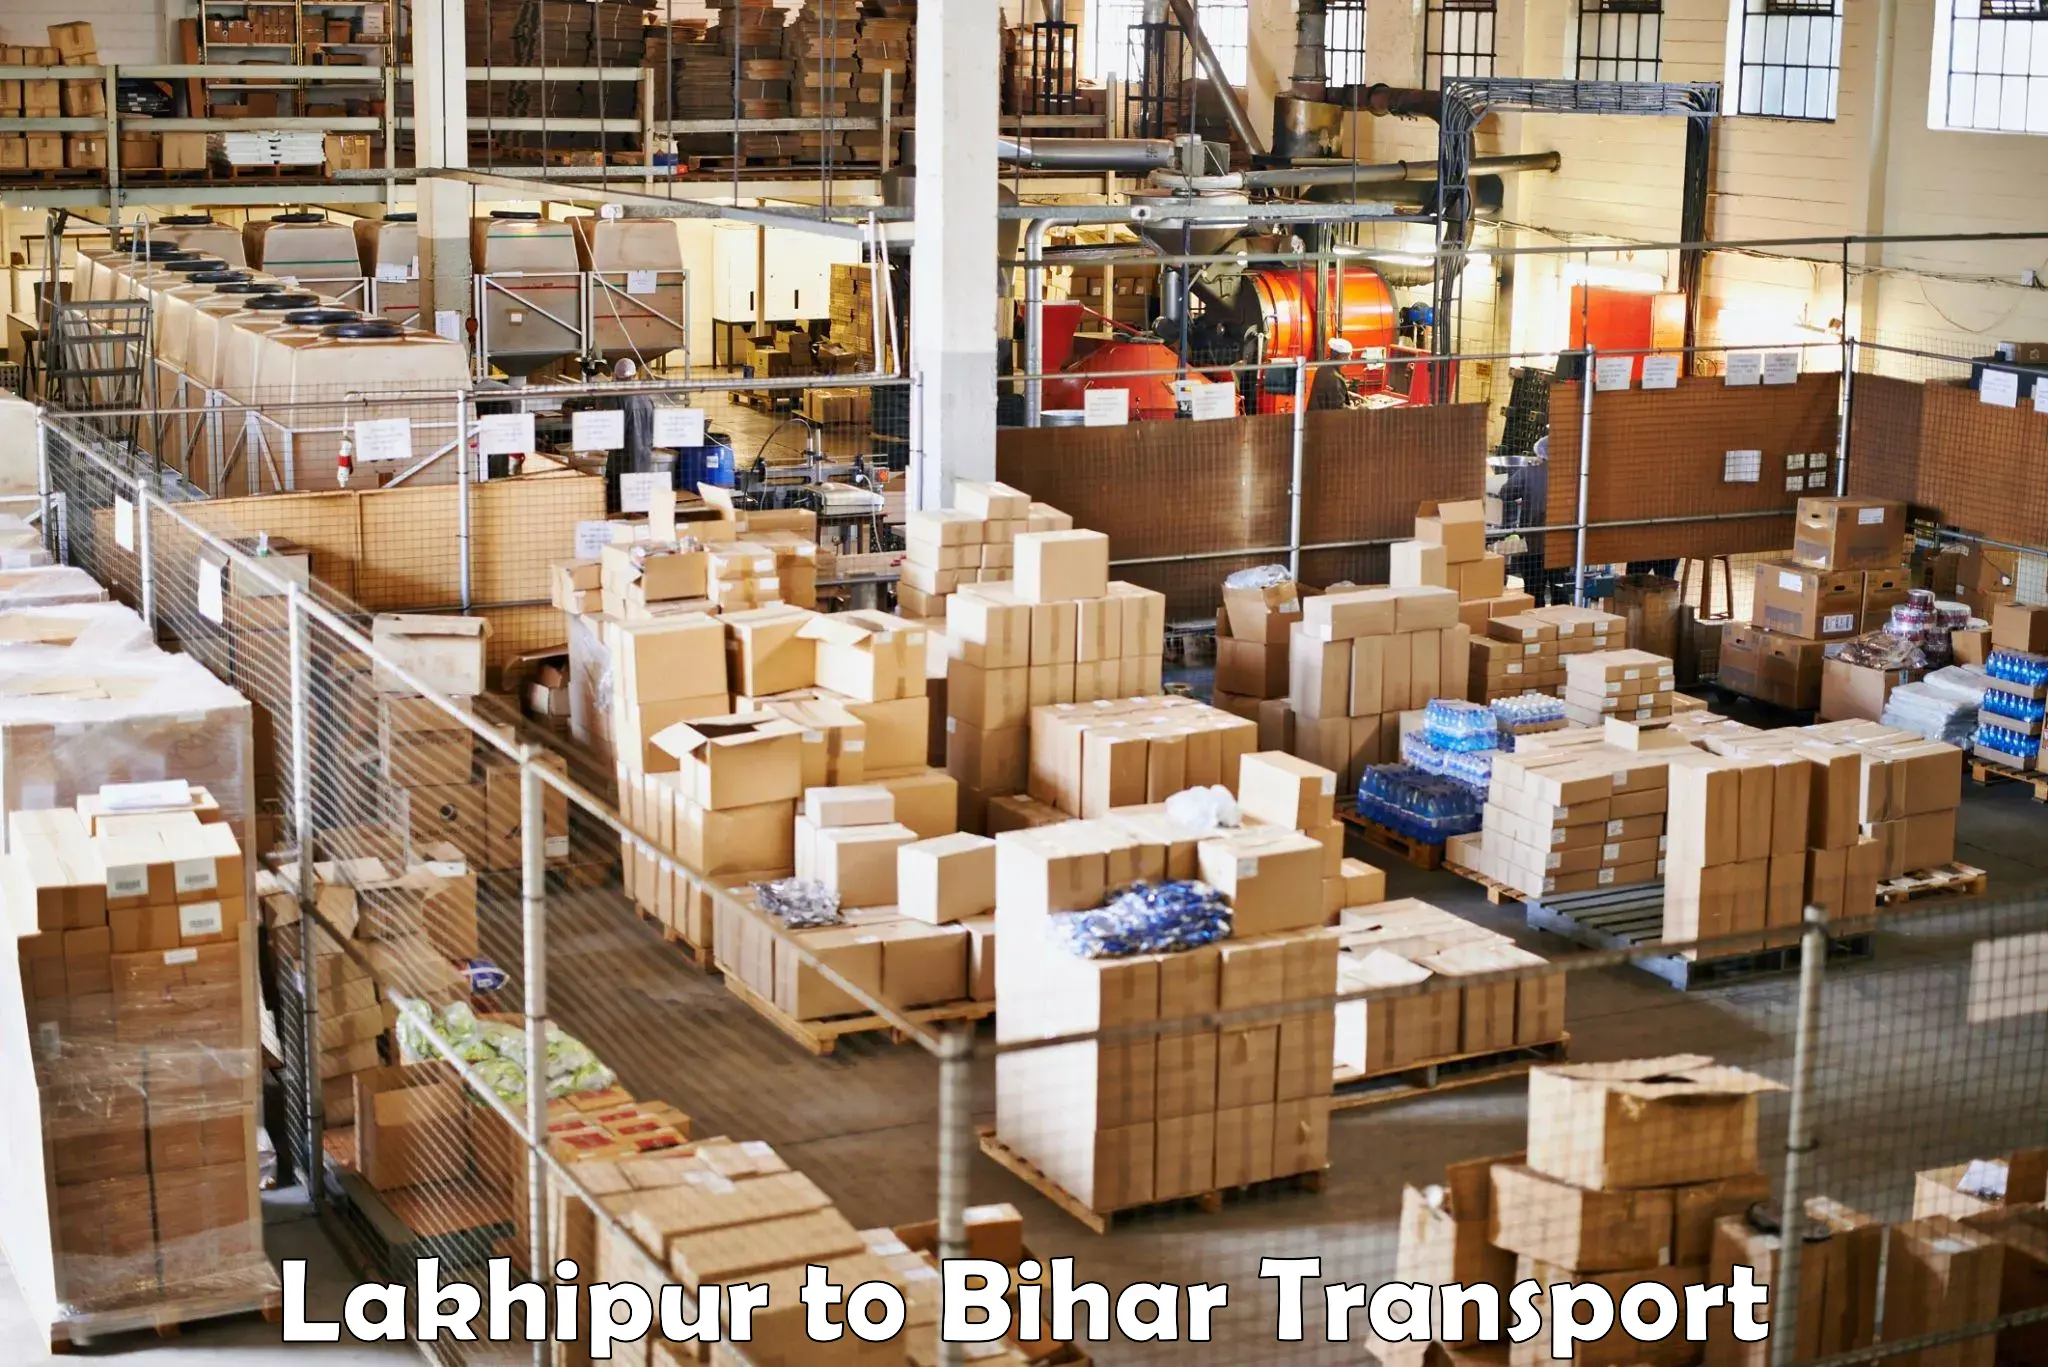 Furniture transport service Lakhipur to Baniapur